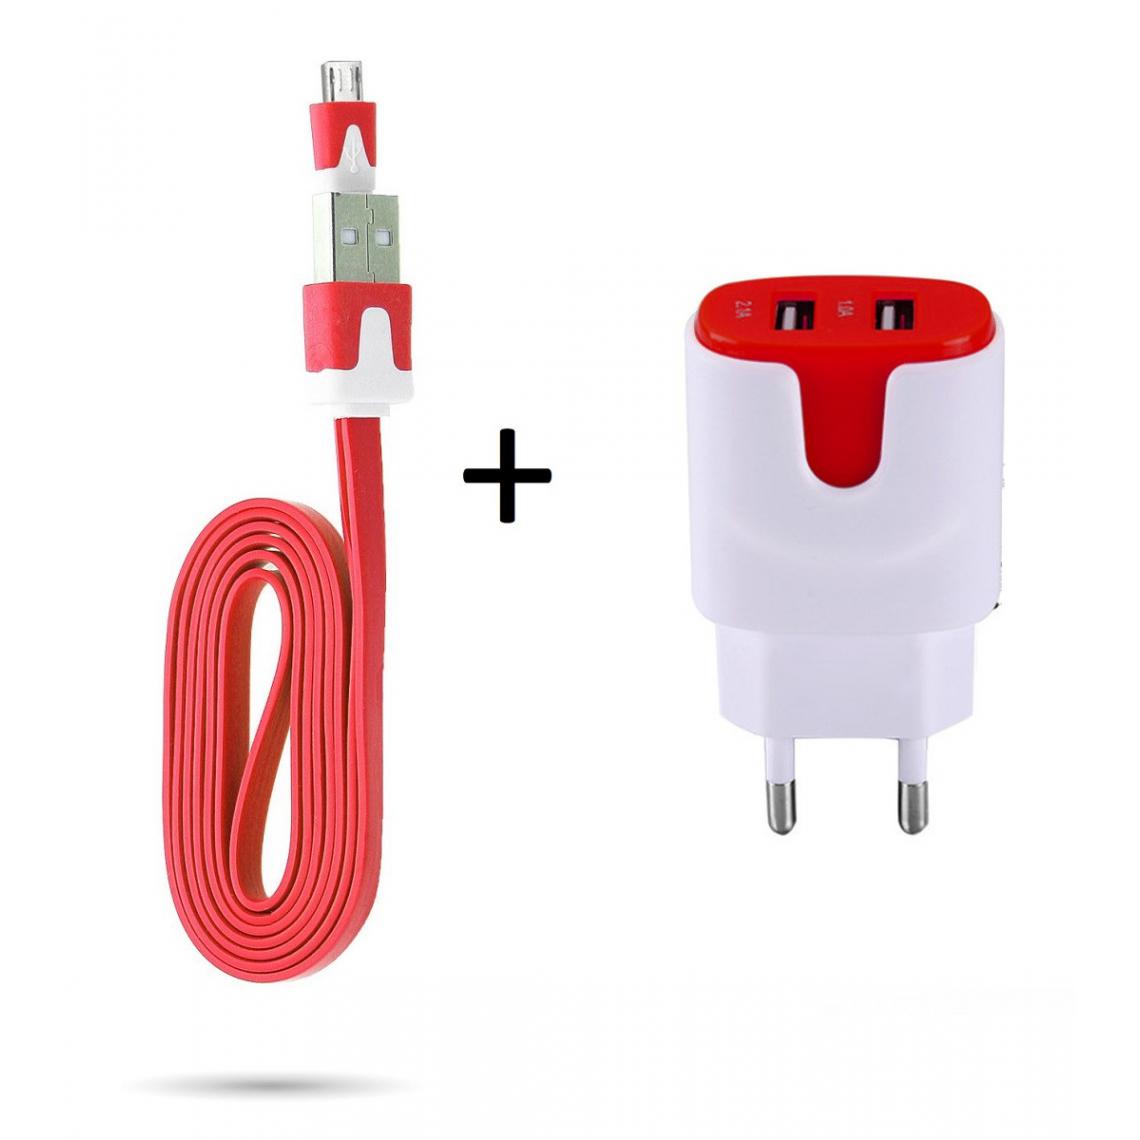 Shot - Pack Chargeur pour WIKO View 4 Lite Smartphone Micro USB (Cable Noodle 1m Chargeur + Double Prise Secteur Couleur USB) (ROUGE) - Chargeur secteur téléphone